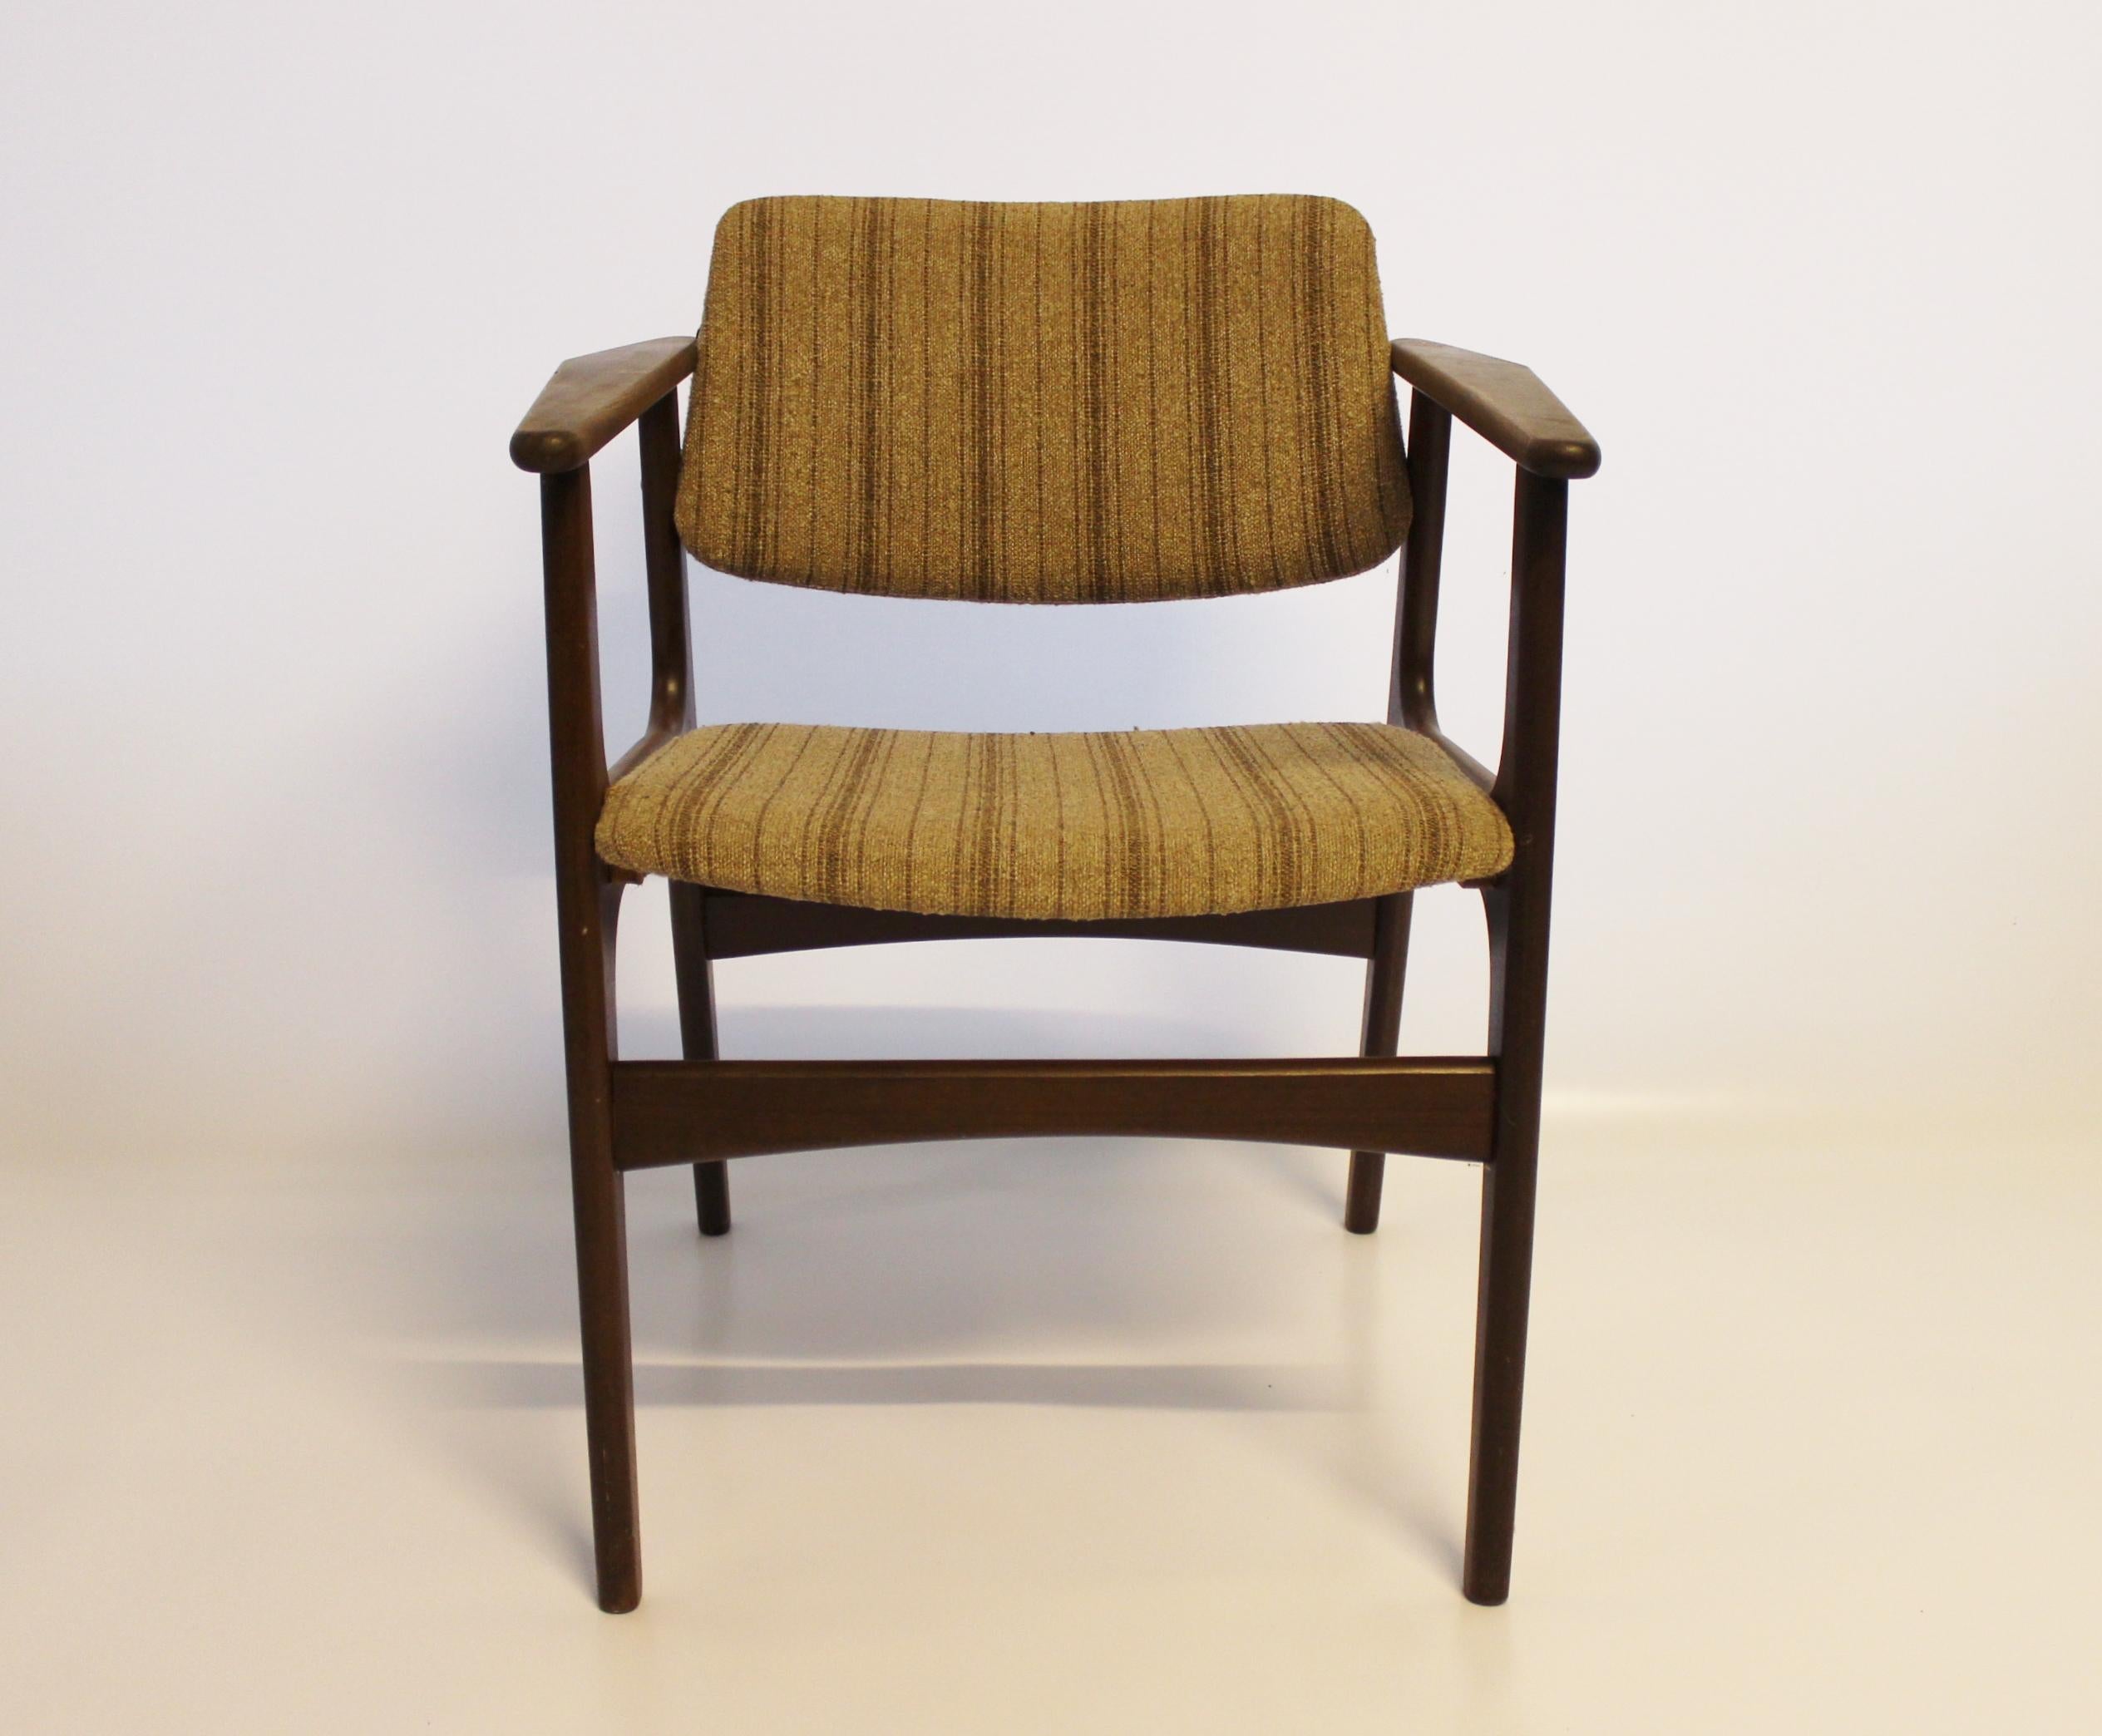 Dieses Set aus vier Sesseln verbindet elegantes Design mit außergewöhnlicher Handwerkskunst und spiegelt die renommierte Arbeit des dänischen Designers Erik Buch wider. Die aus Teakholz gefertigten Stühle strahlen Wärme und Raffinesse aus, die für